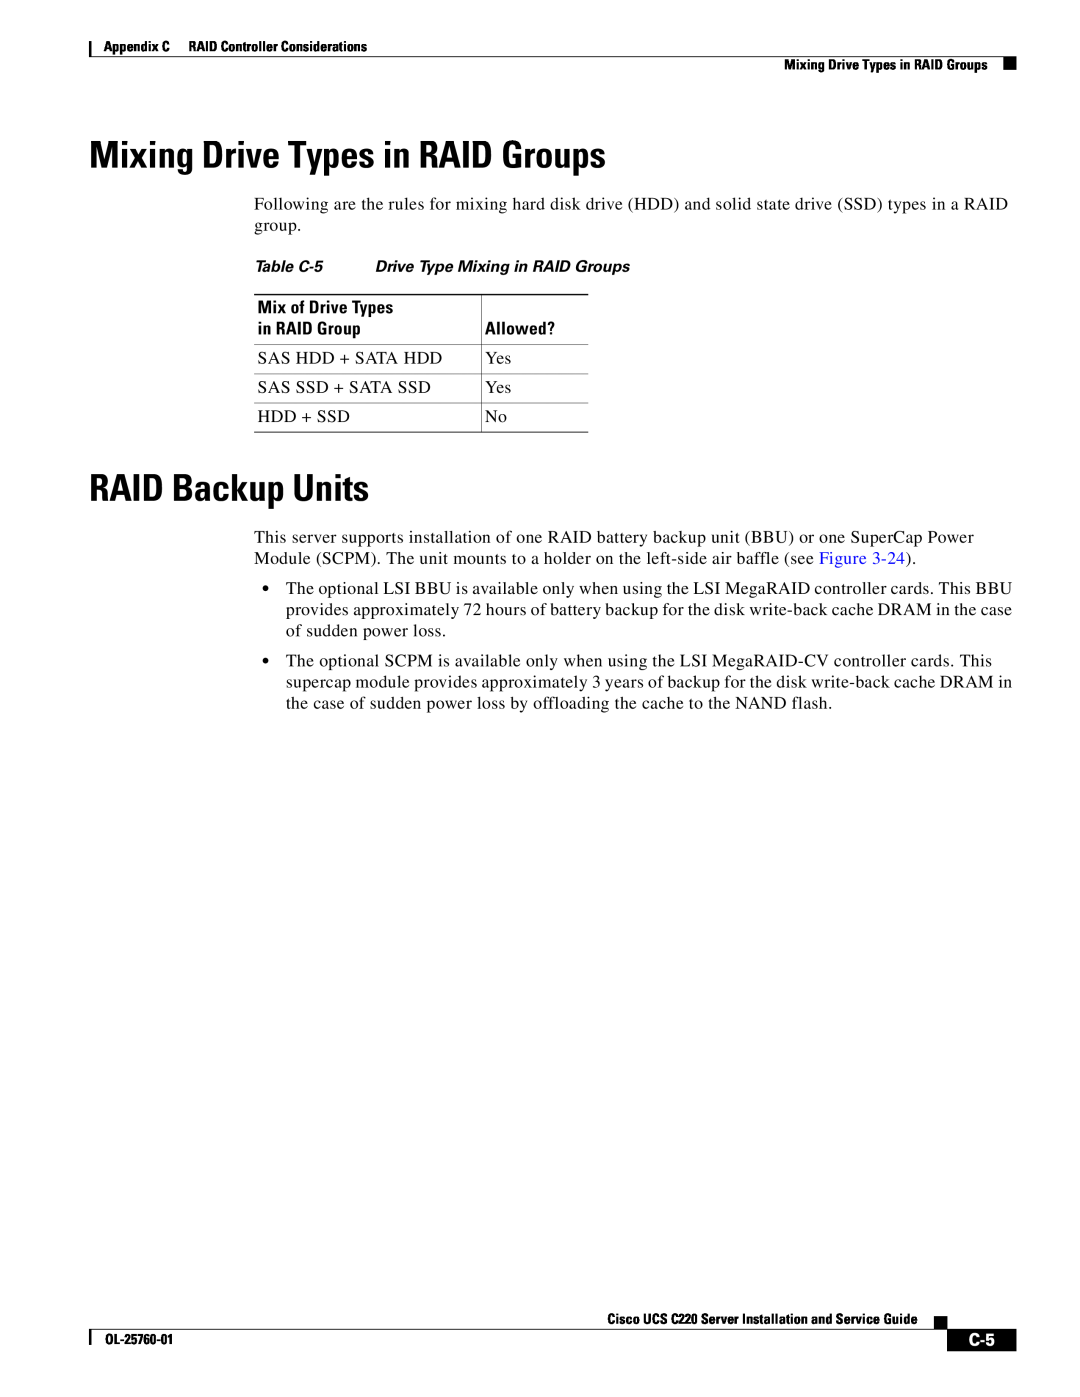 Cisco Systems UCSRAID9266CV, UCSSP6C220E, UCUCSEZC220M3S, 9266CV-8i RAID Backup Units, Mixing Drive Types in RAID Groups 